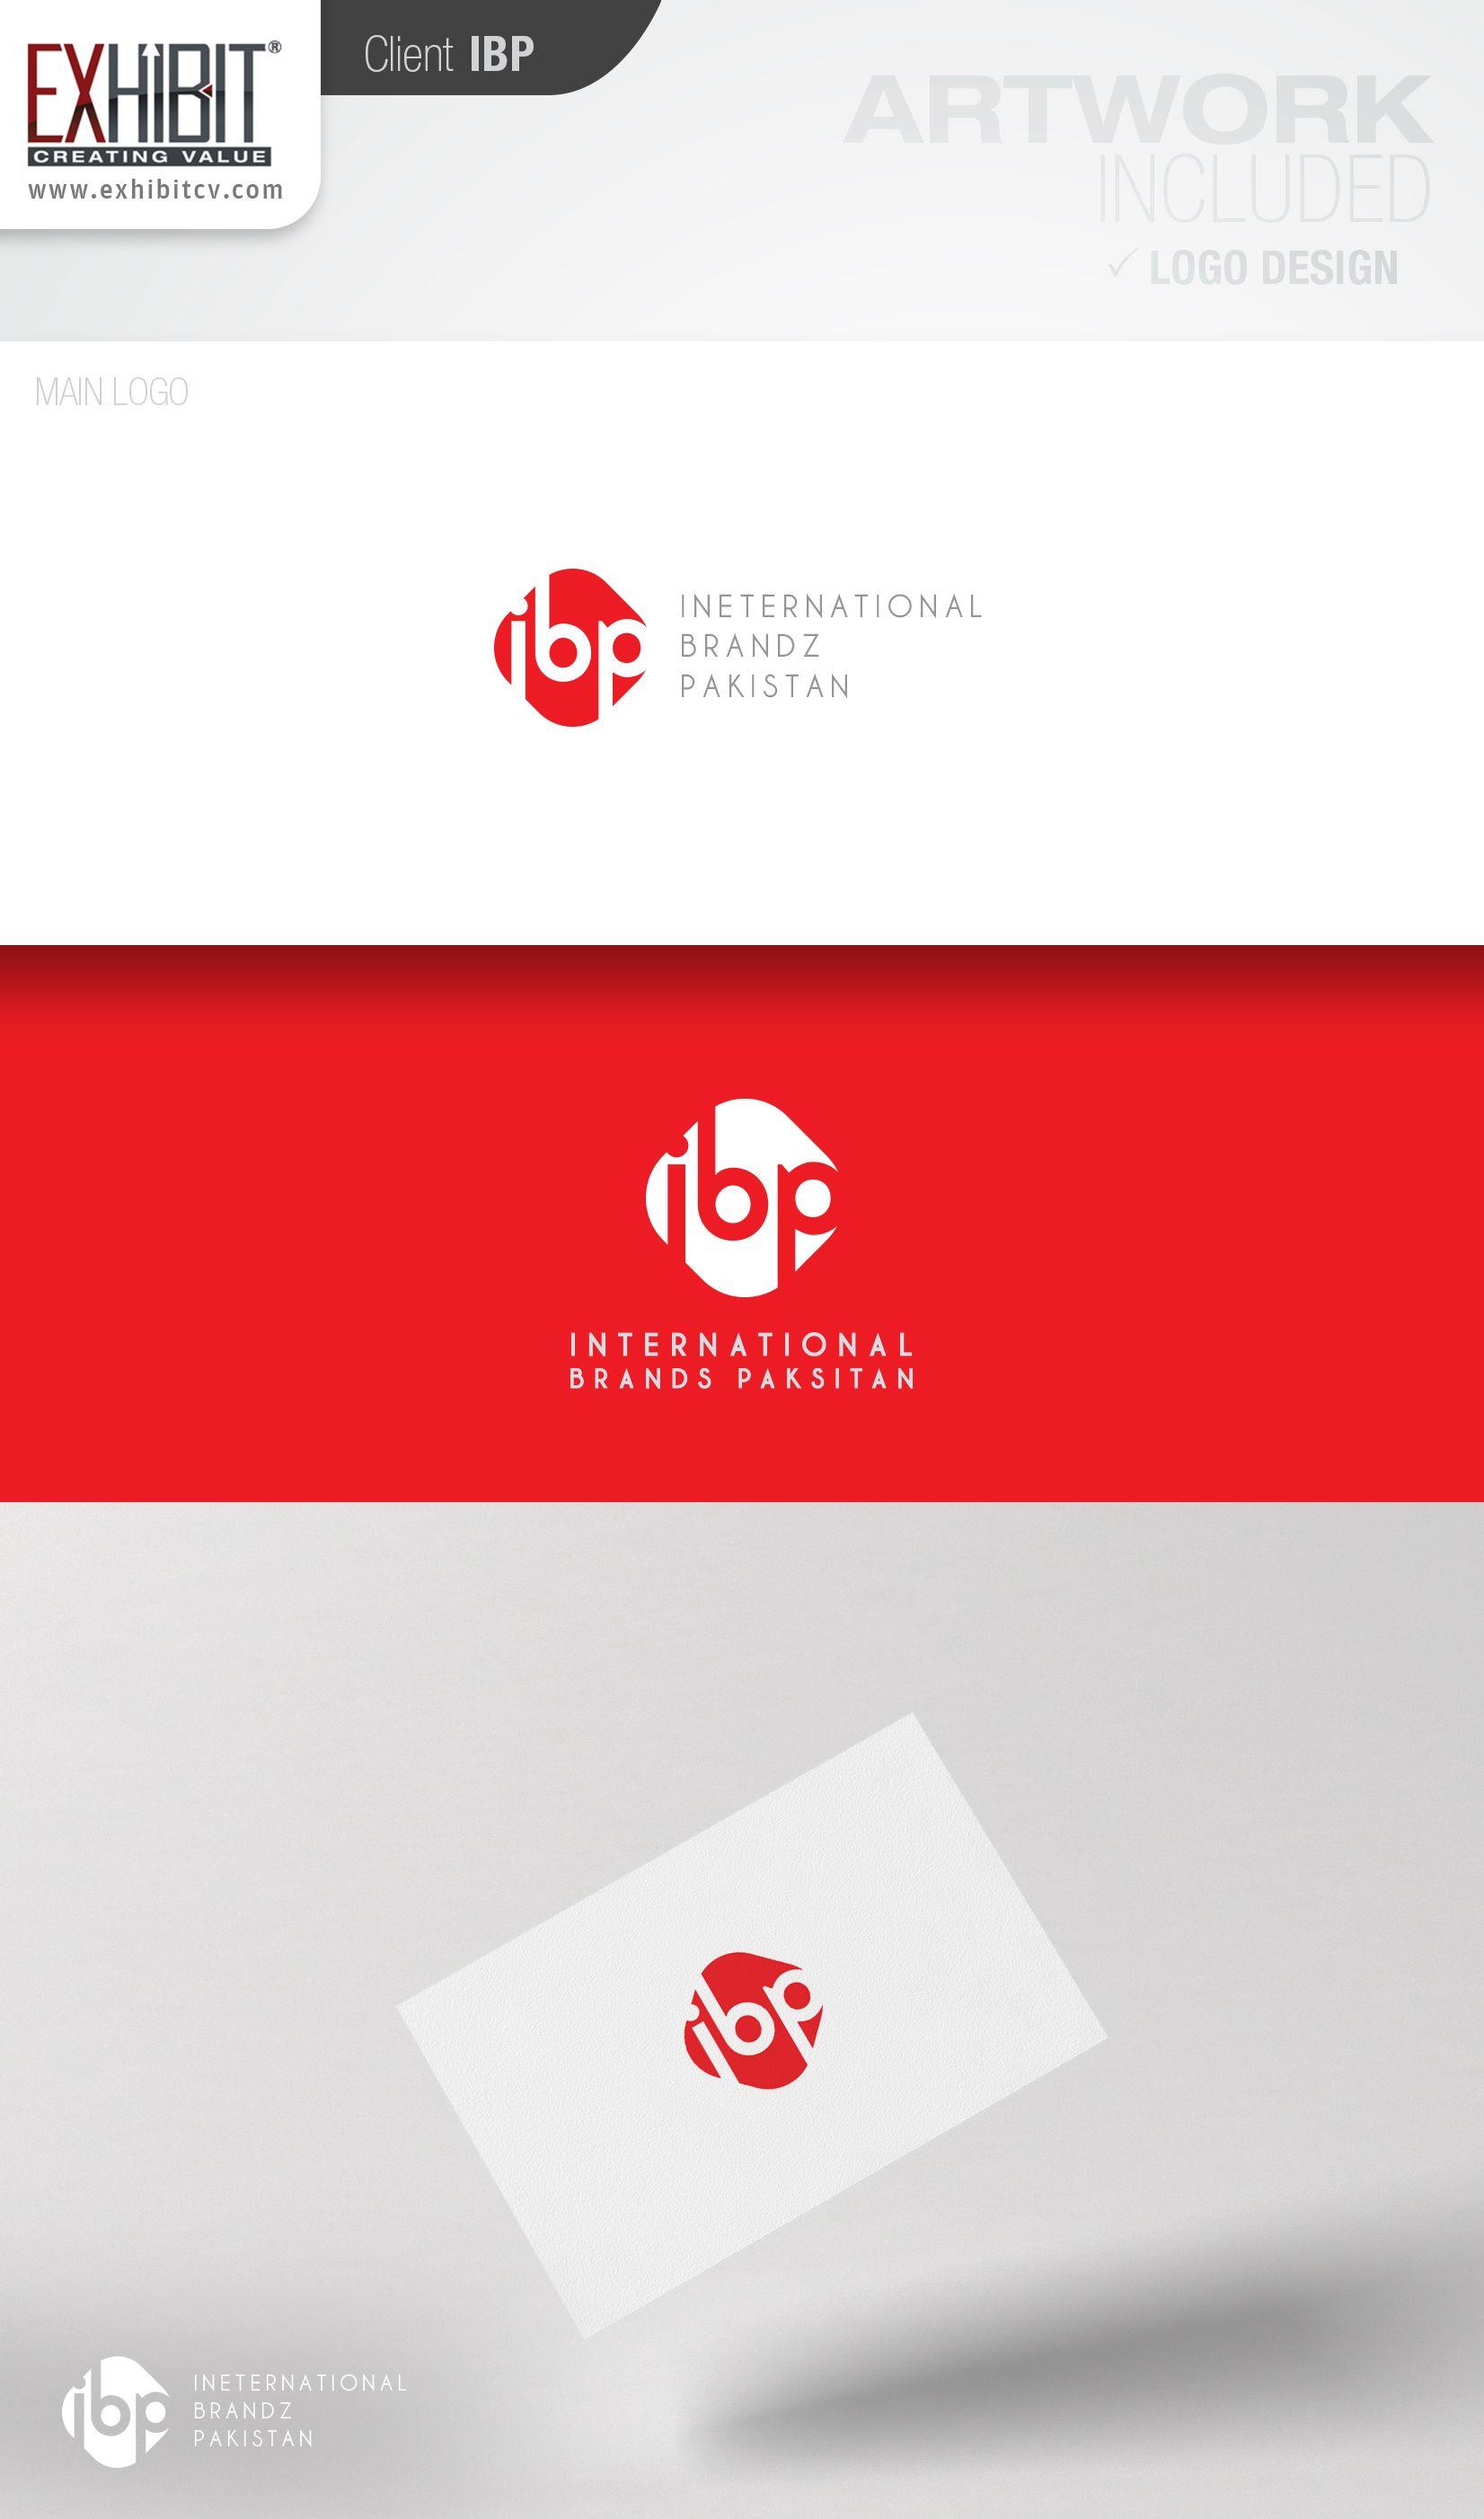 IBP Logo - IBP - EXHIBIT®